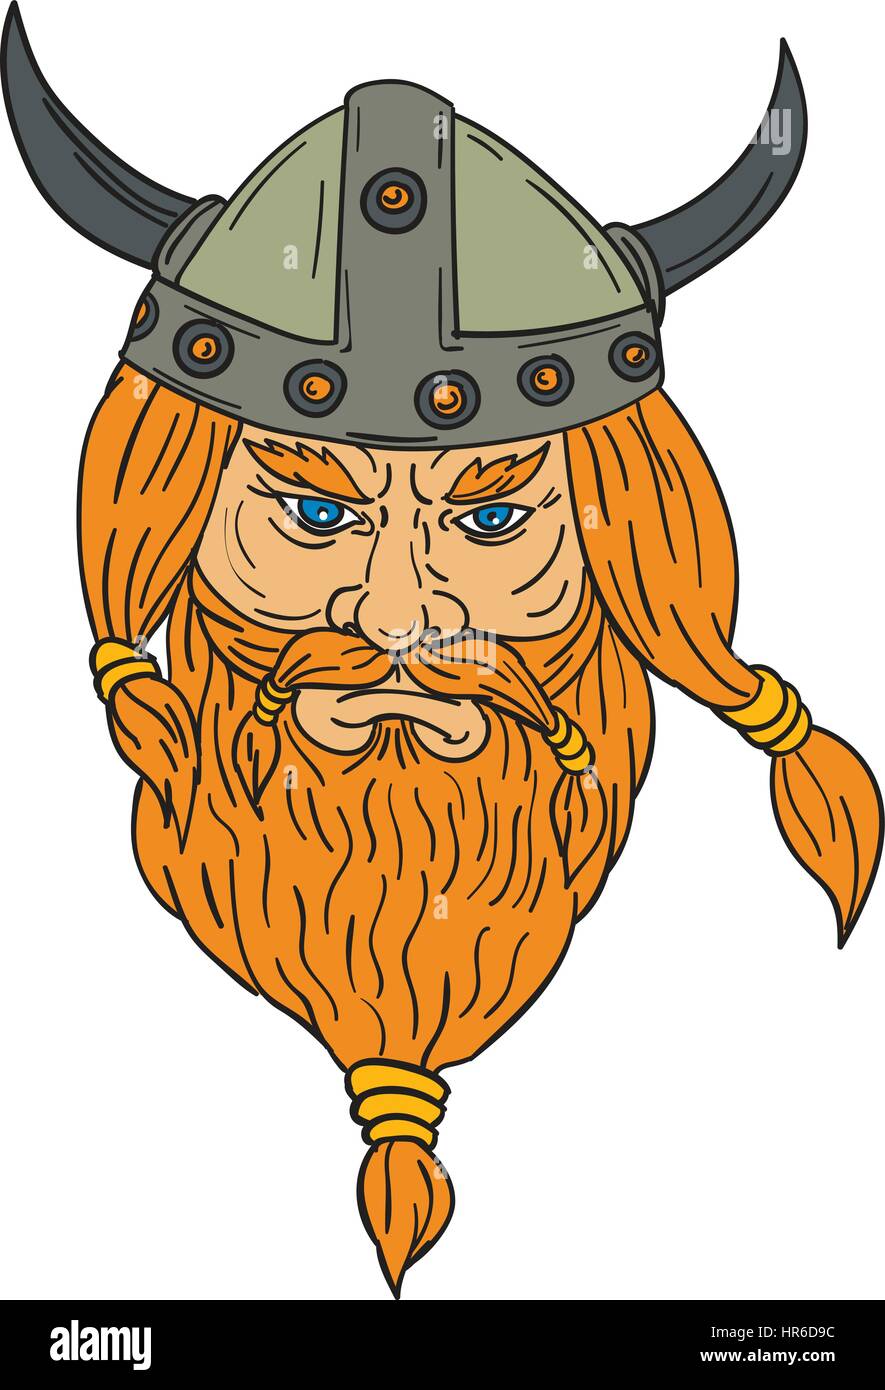 Style croquis dessin illustration d'un norseman guerrier viking raider chef barbare barbe avec vue de l'avant ensemble isolées sur fond blanc. Illustration de Vecteur